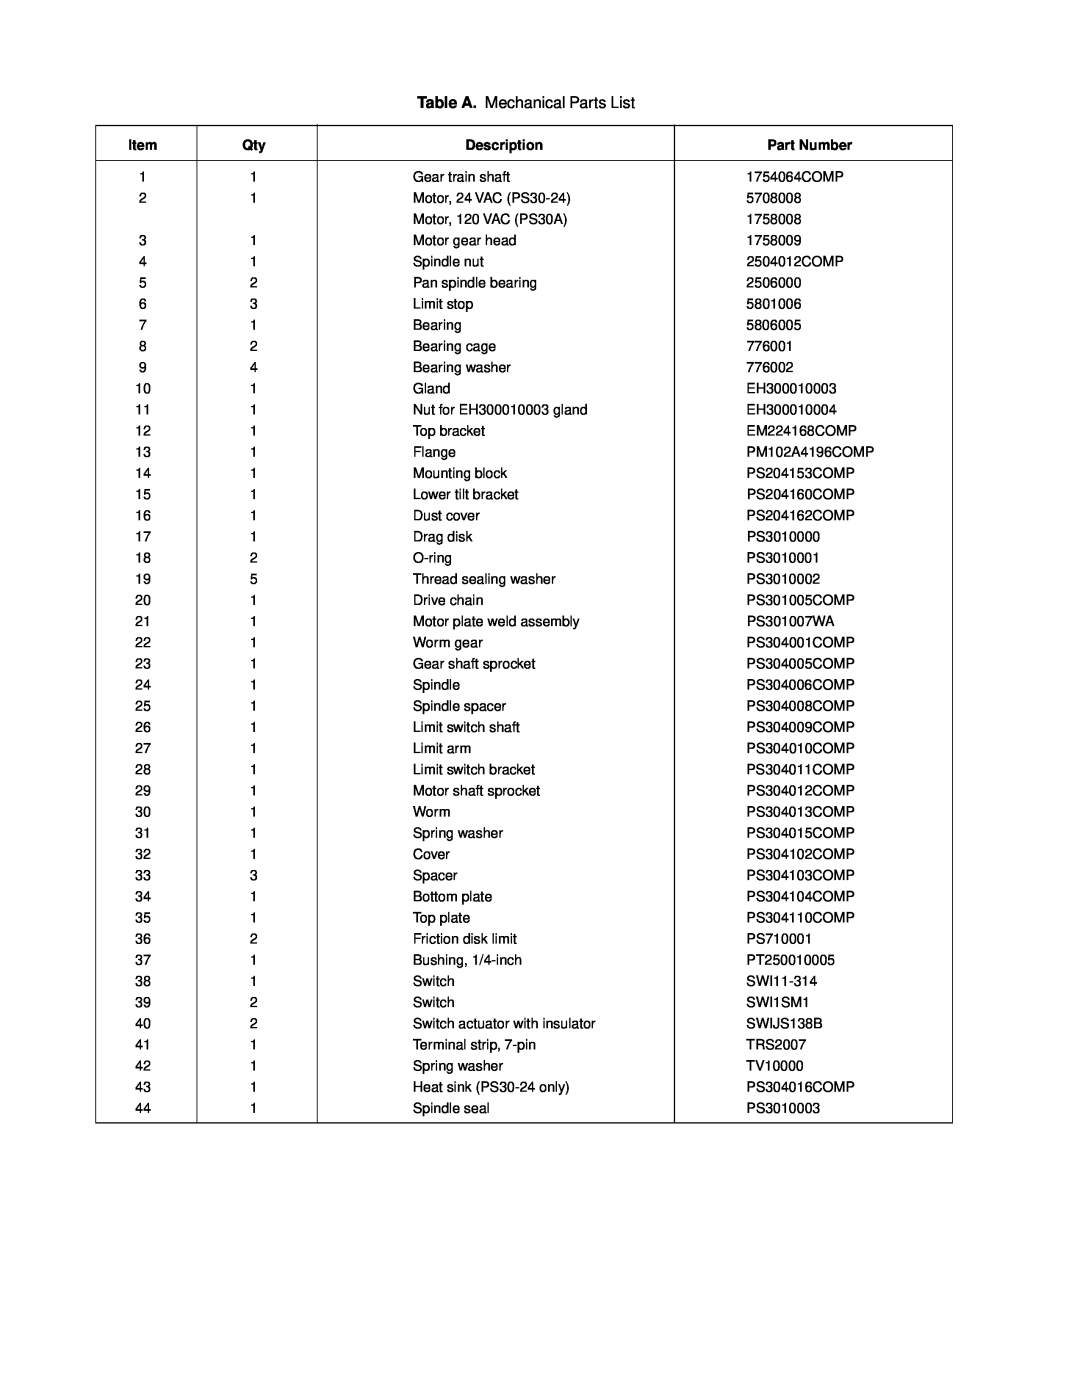 Pelco PS30-24 service manual Table A. Mechanical Parts List, Description, Part Number 